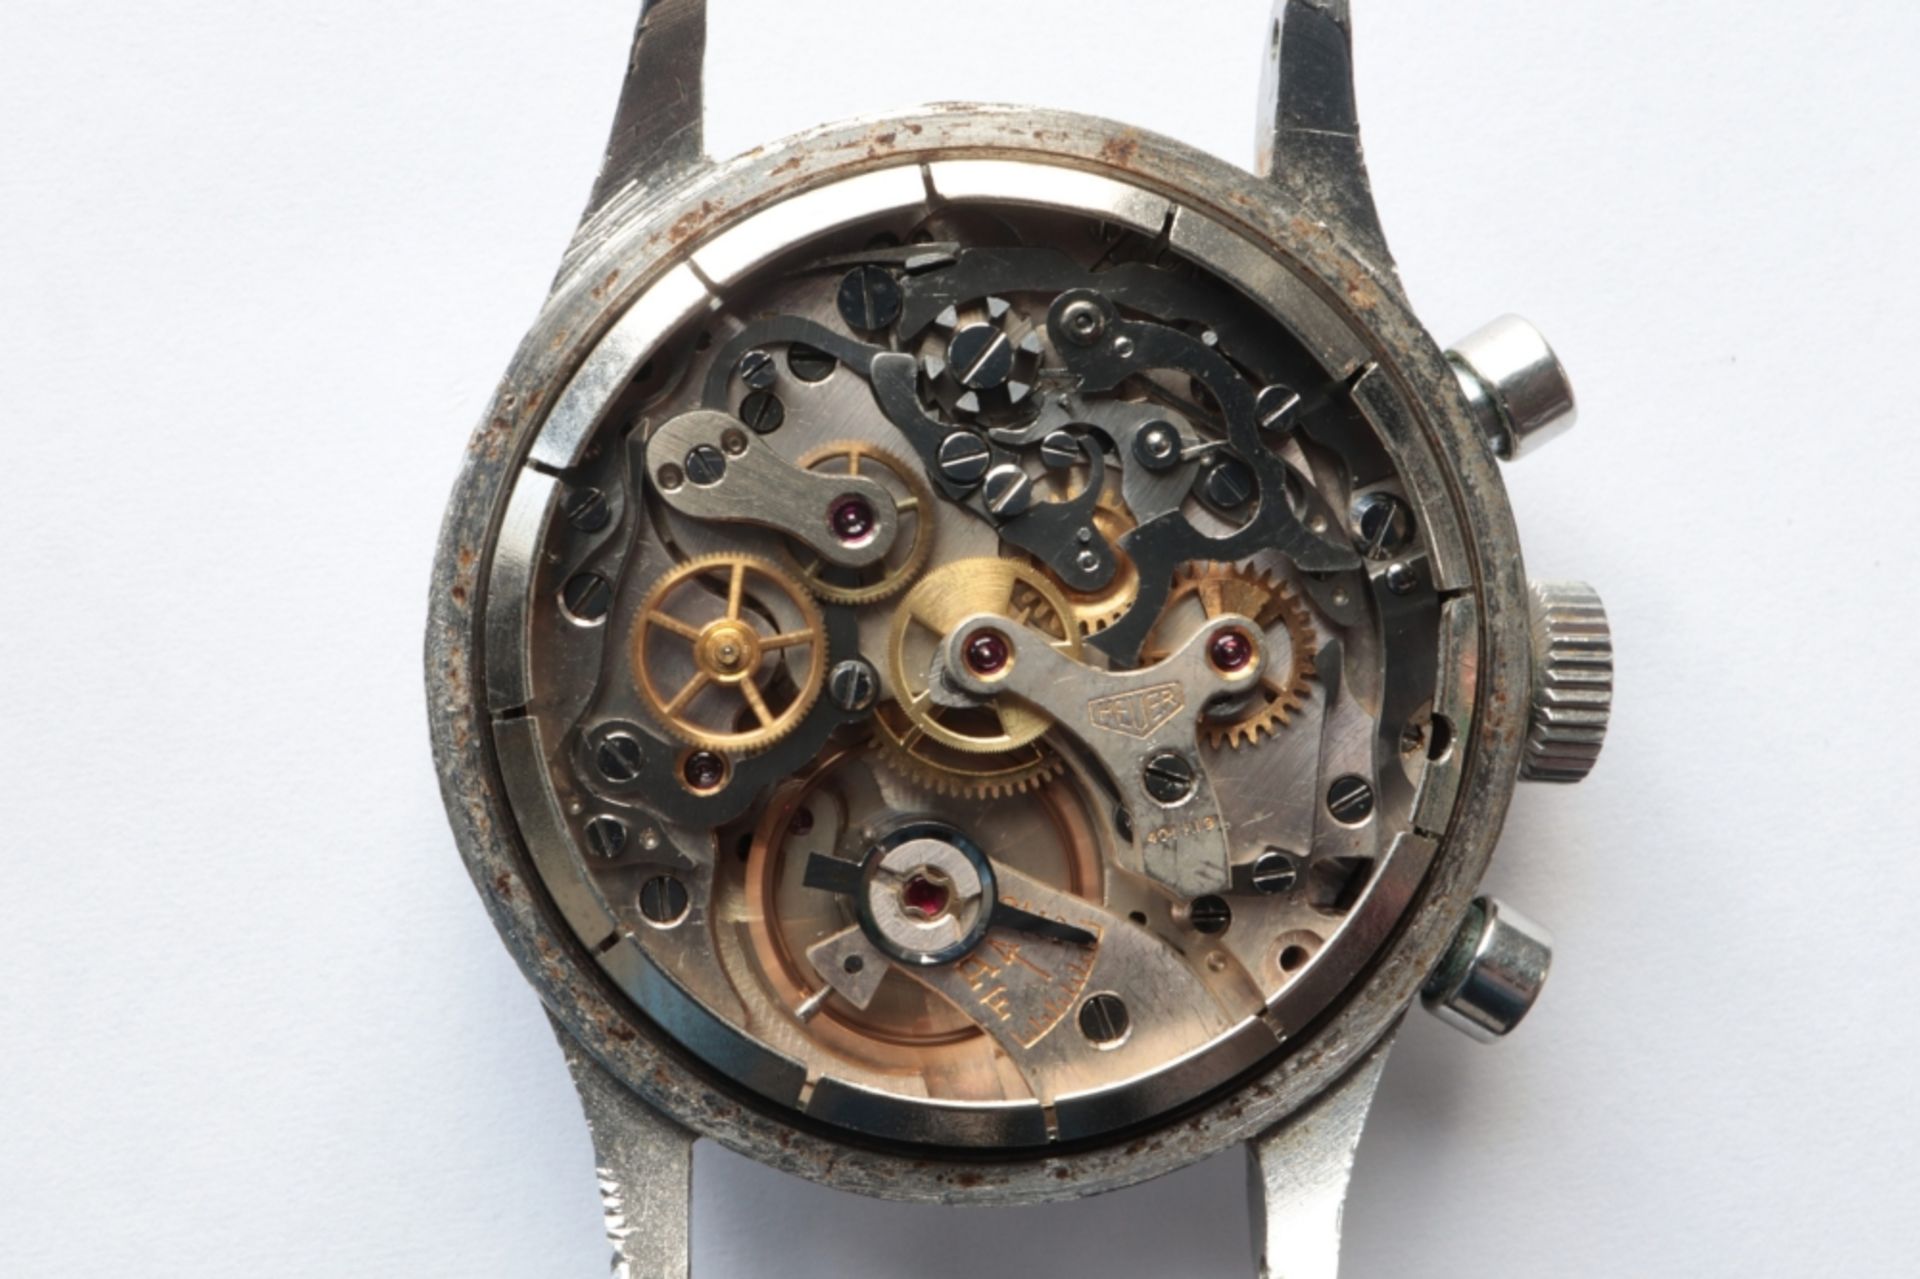 Heuer Heuer chronograph bracelet watch SWITZERLAND 1940-1950 Heuer "Big Eyes" manually-wound steel - Bild 3 aus 3